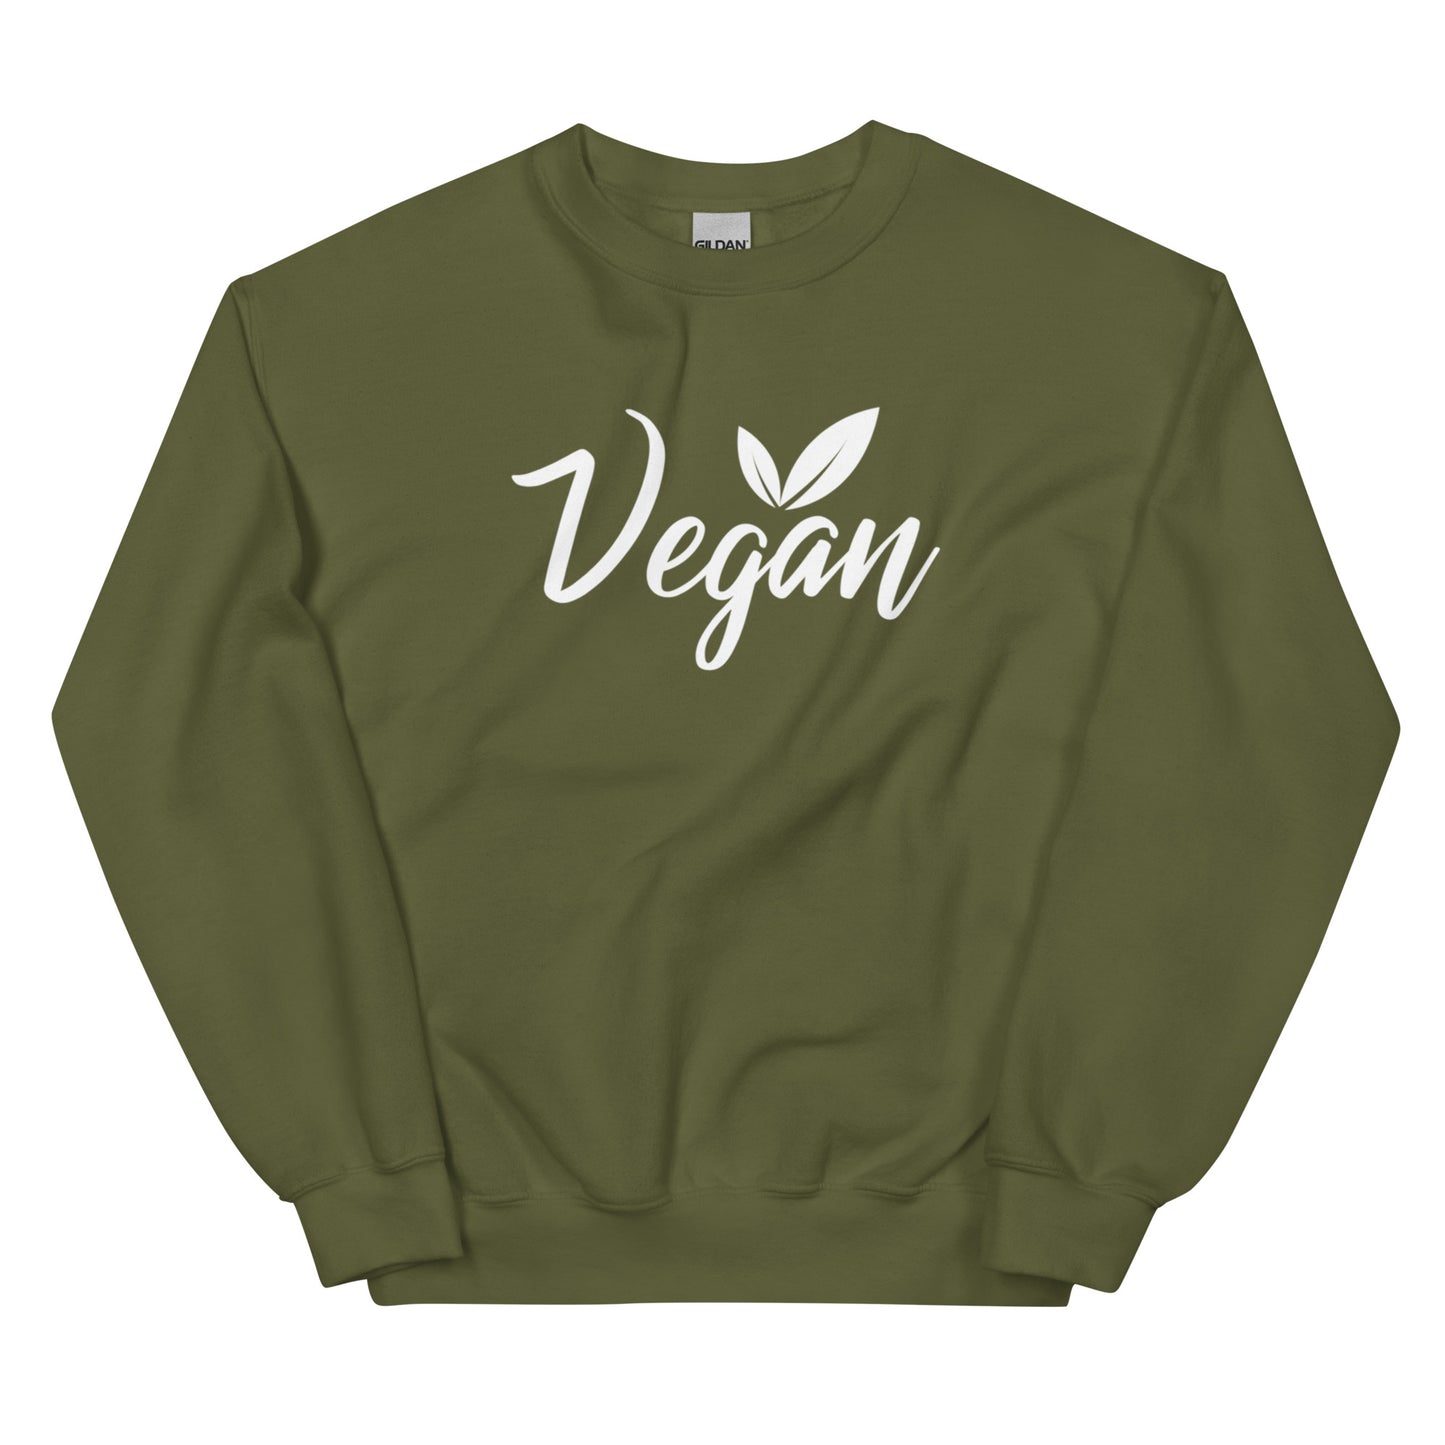 Vegan - Sweatshirt